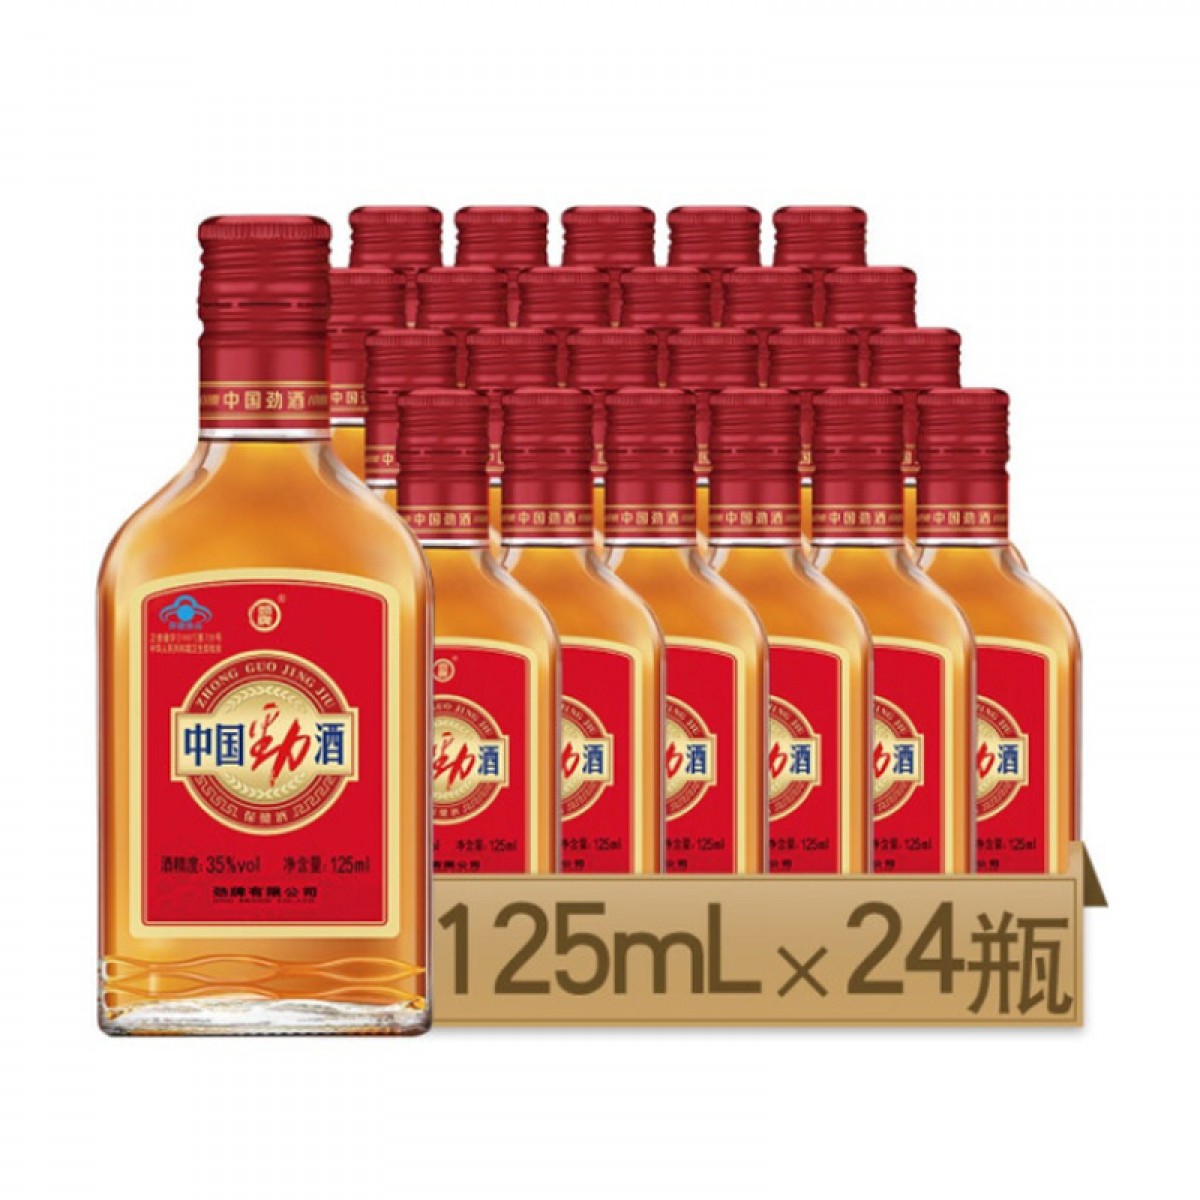 劲牌 中国劲酒 35度 小瓶装 小劲酒常规口味 125mLX24 瓶 整箱